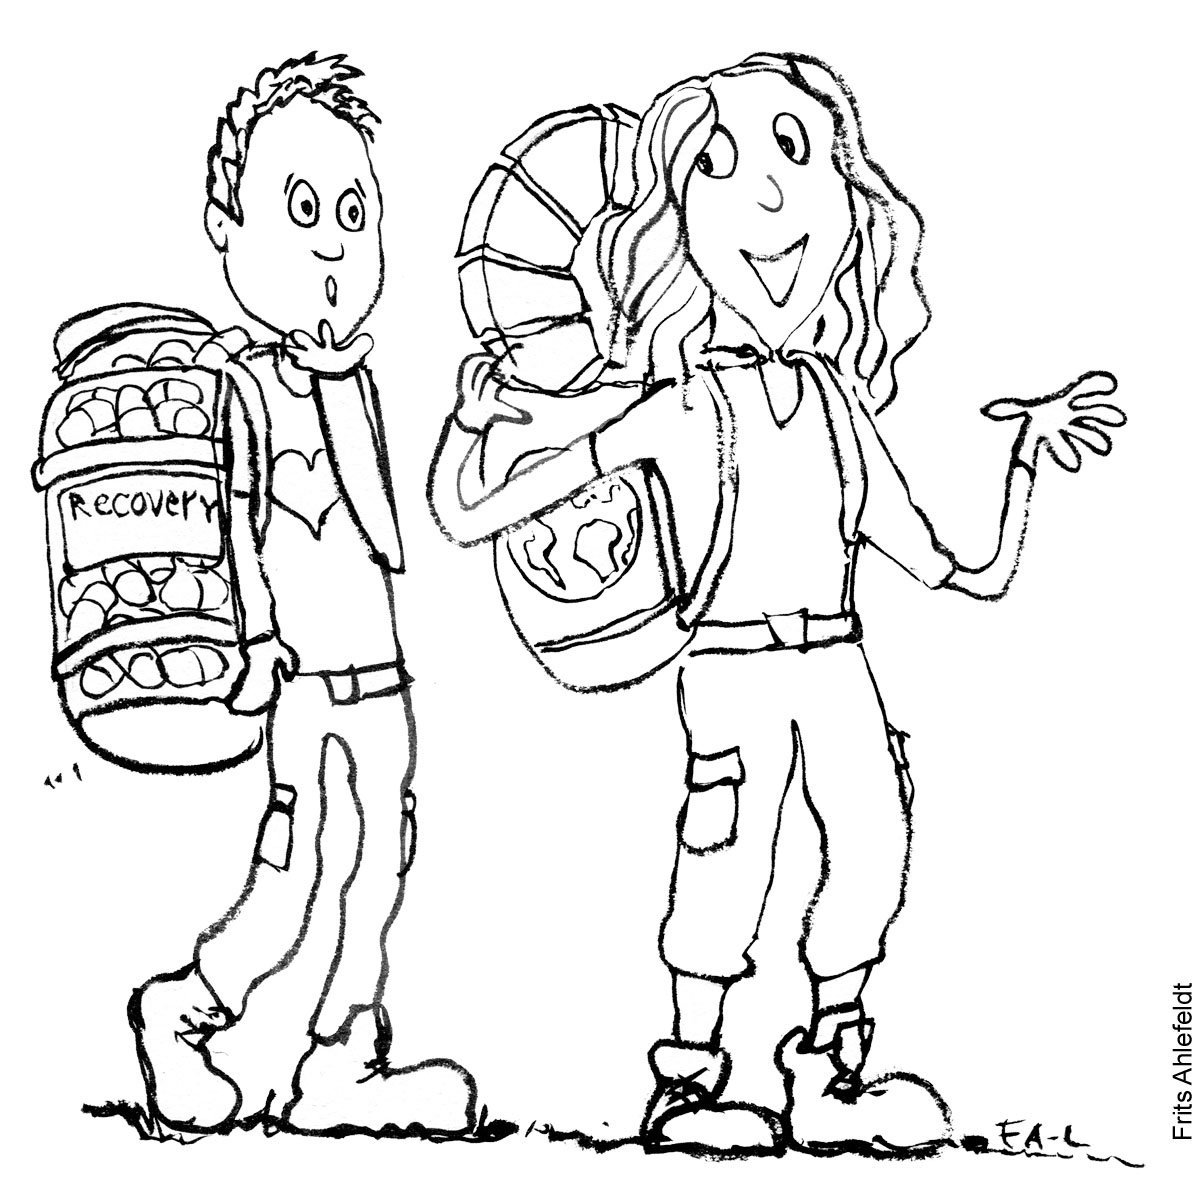 Tegning af to vandrere, en med et pilleglas og recovery tekst, som går for sit helbred, og en med verdensmål i sin rygsæk, som går for en bedre verden. Vandrefilosofi illustration af Frits Ahlefeldt